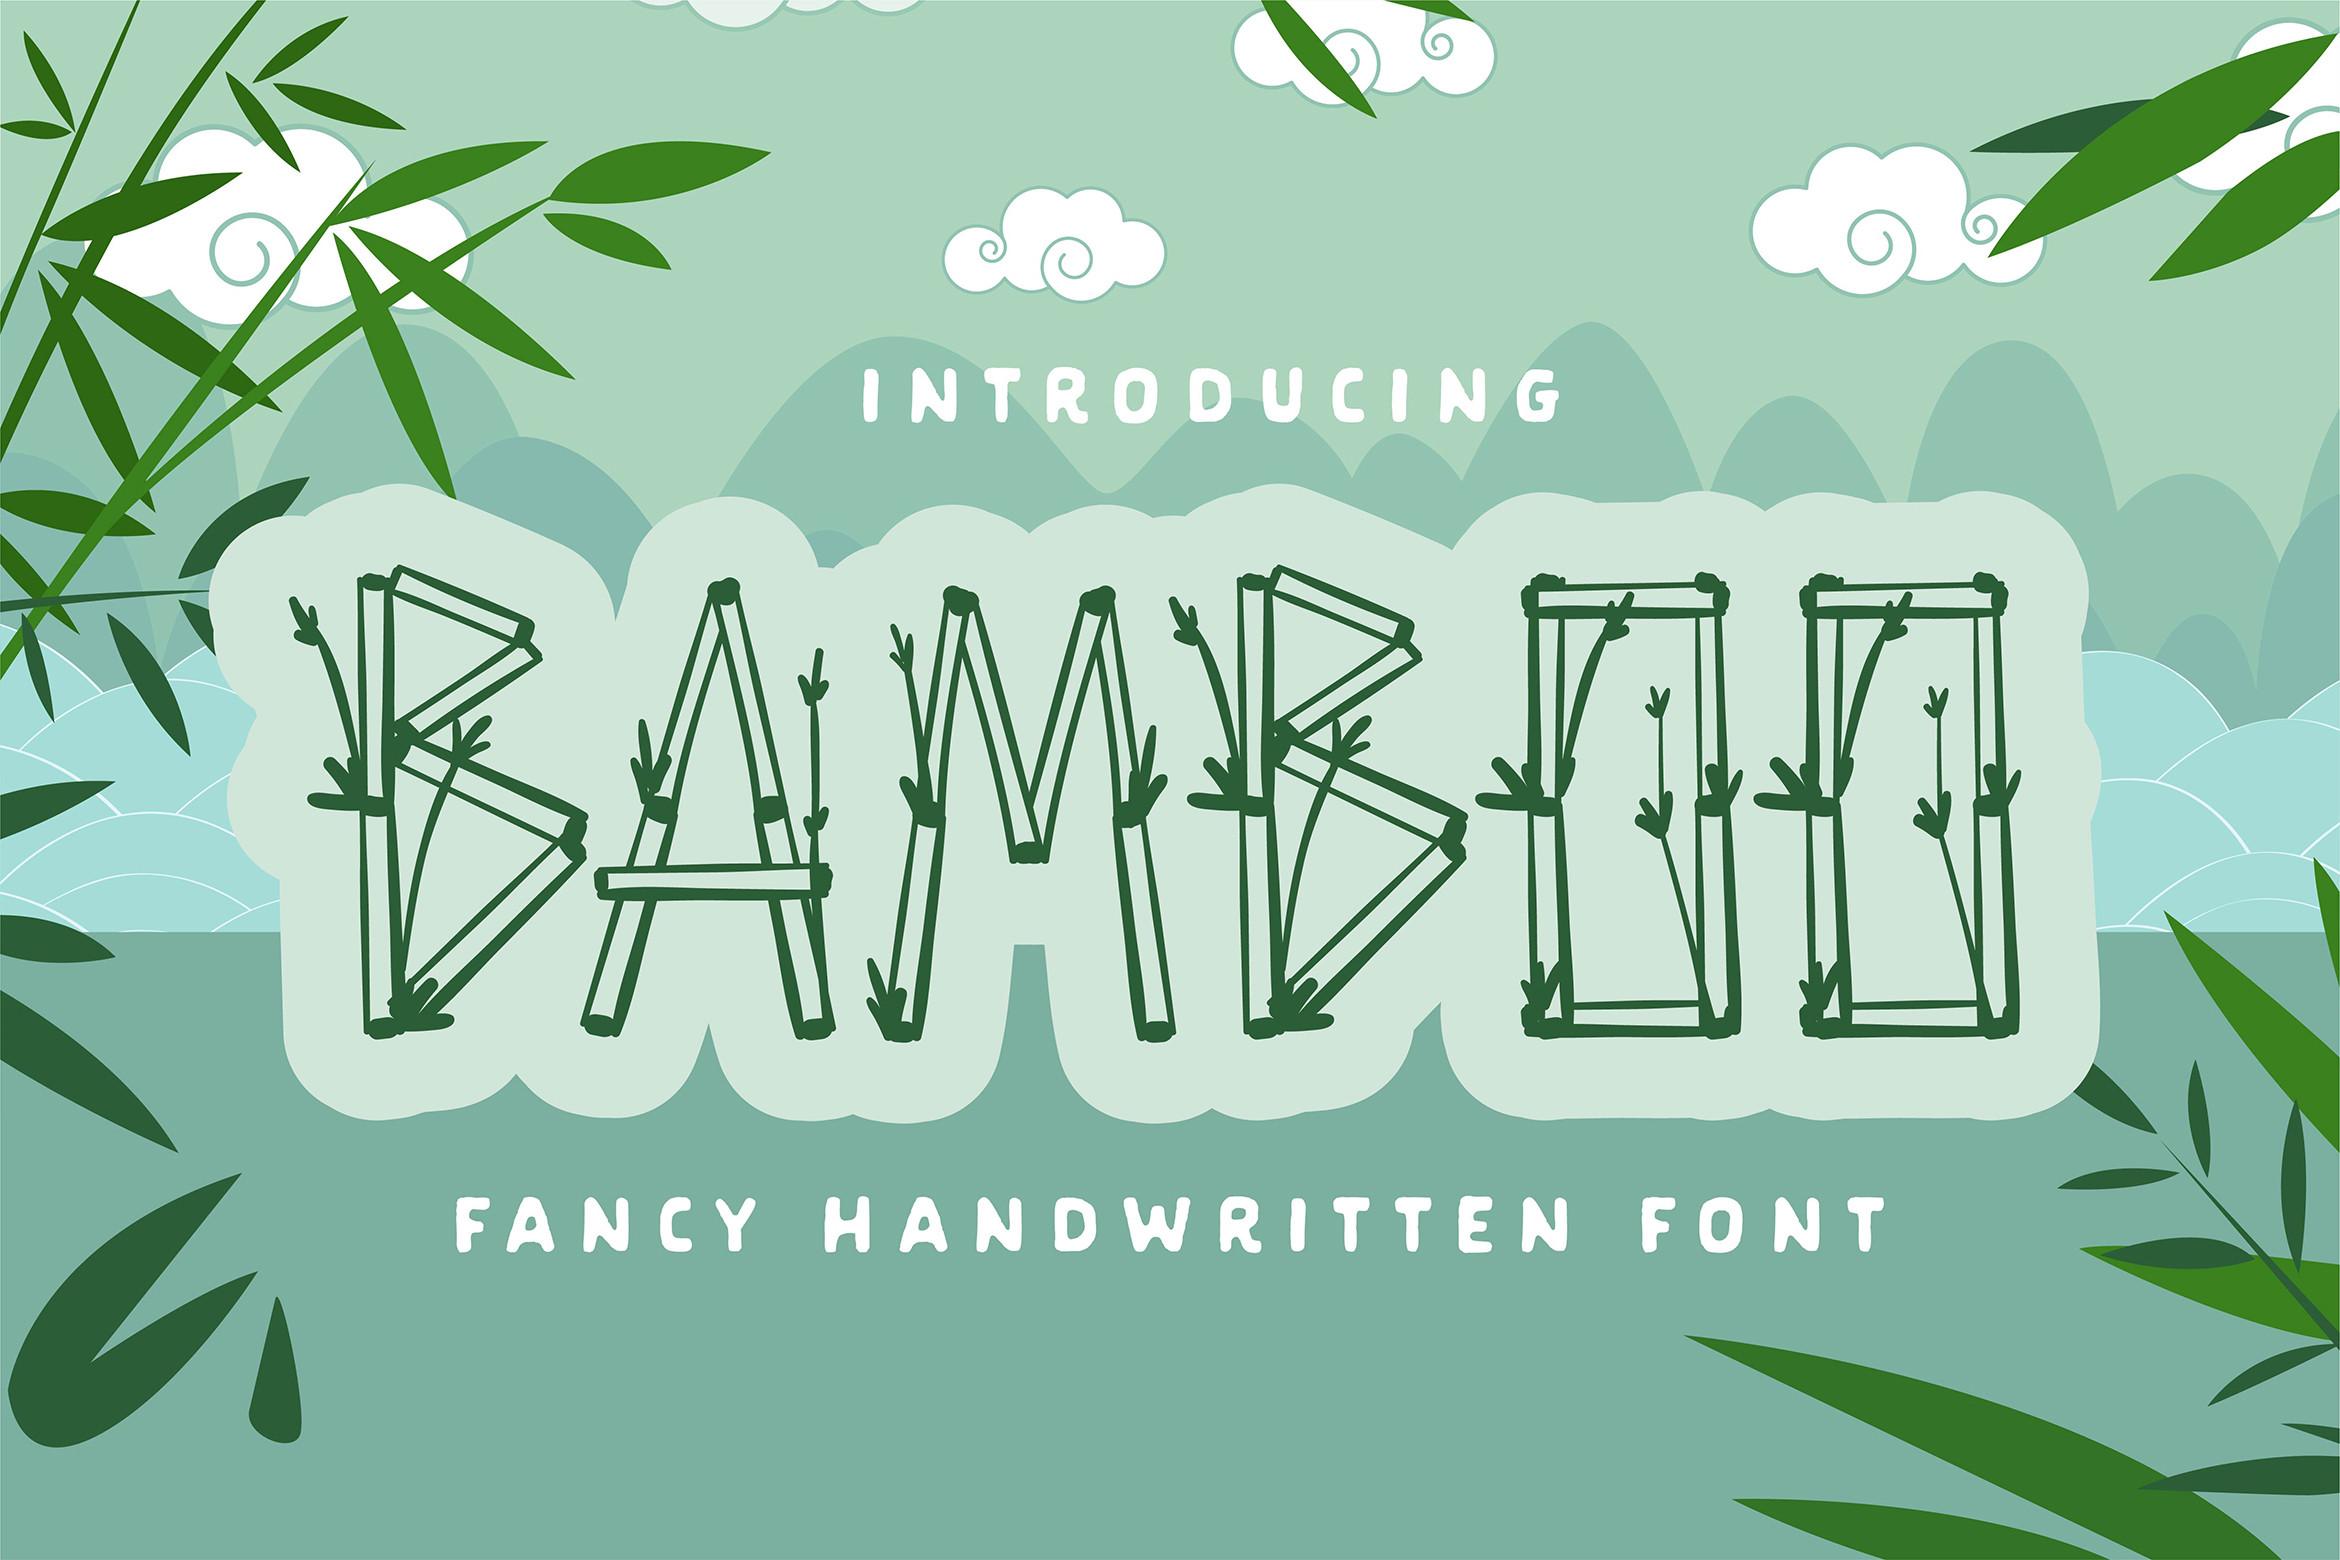 Bamboo Font